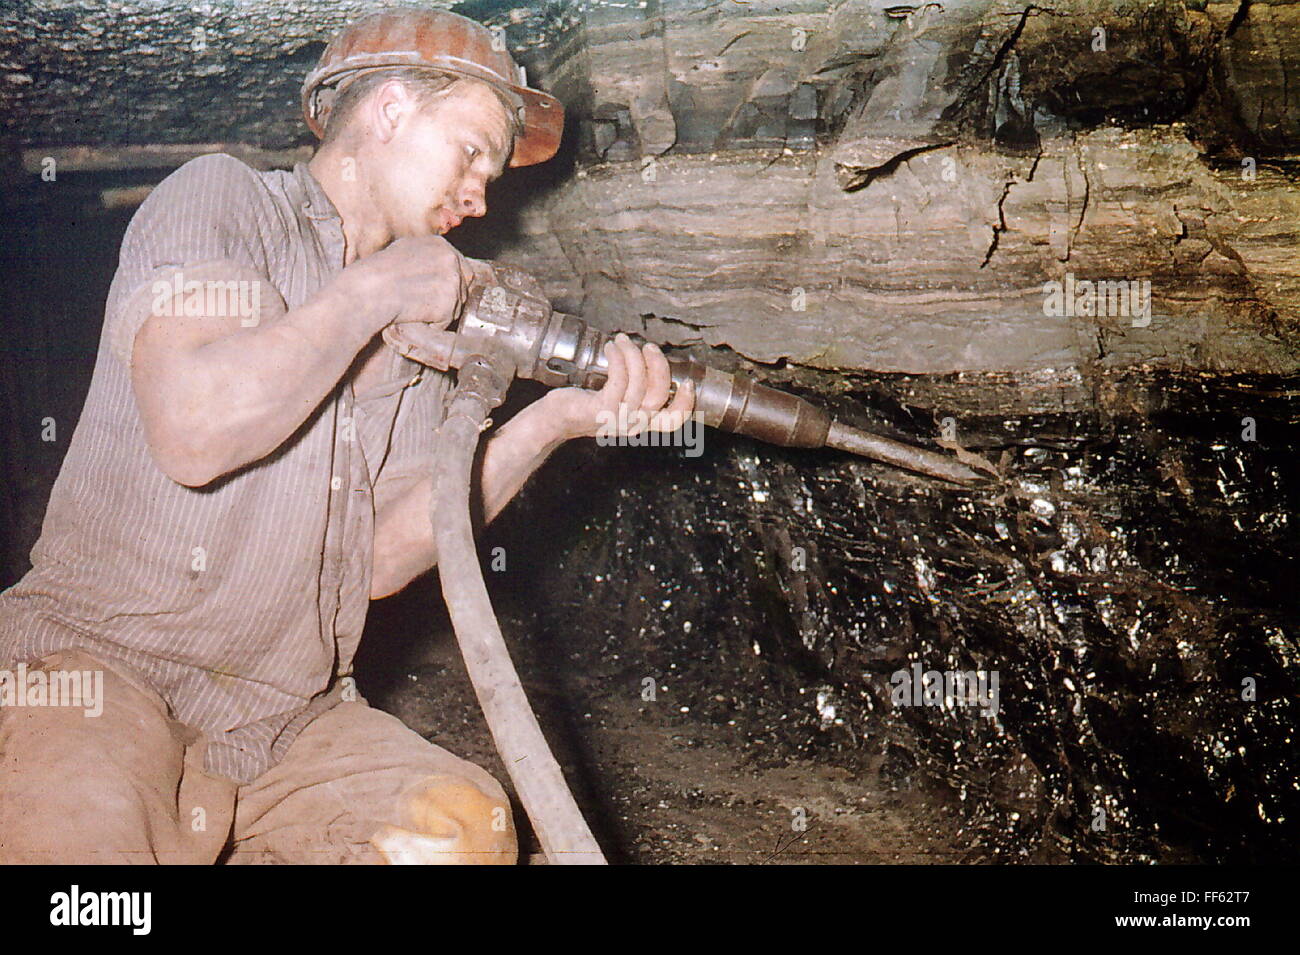 Mines, mines de charbon, charbon de bois, Penzberg, haute-Bavière, Allemagne, 1959, droits additionnels-Clearences-non disponible Banque D'Images